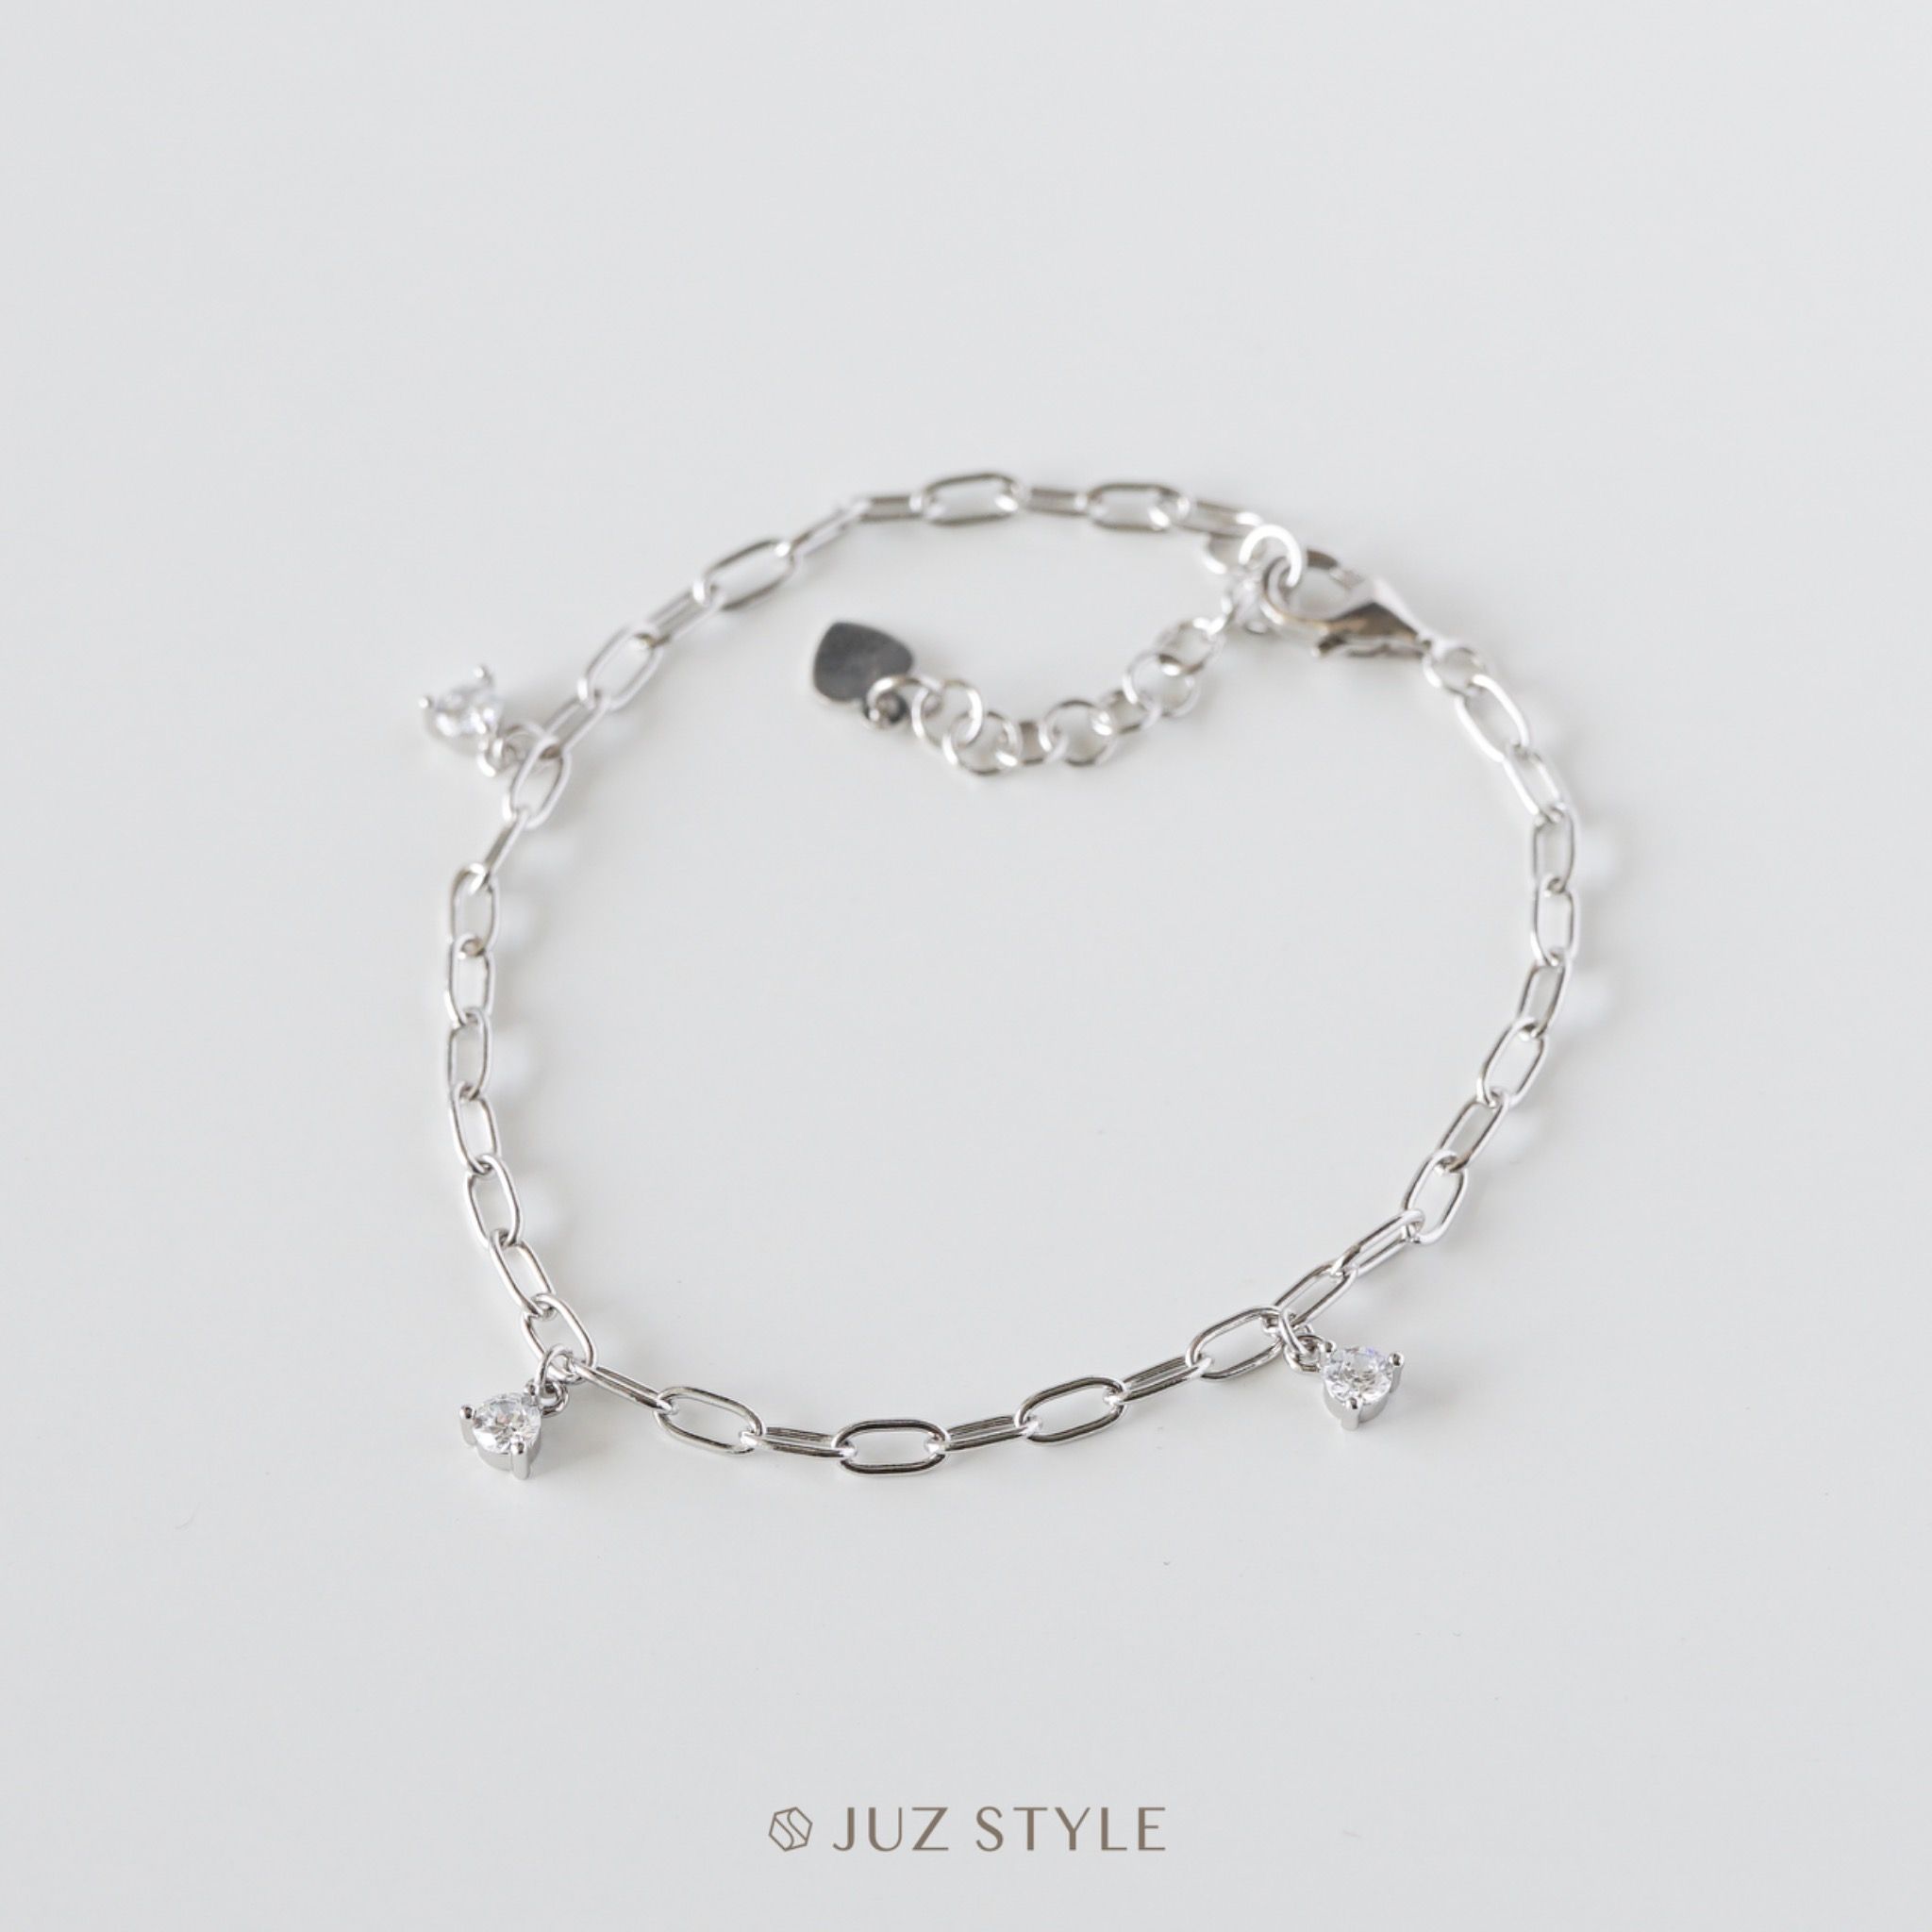  Lắc tay bạc Oval chain & Cz charm 